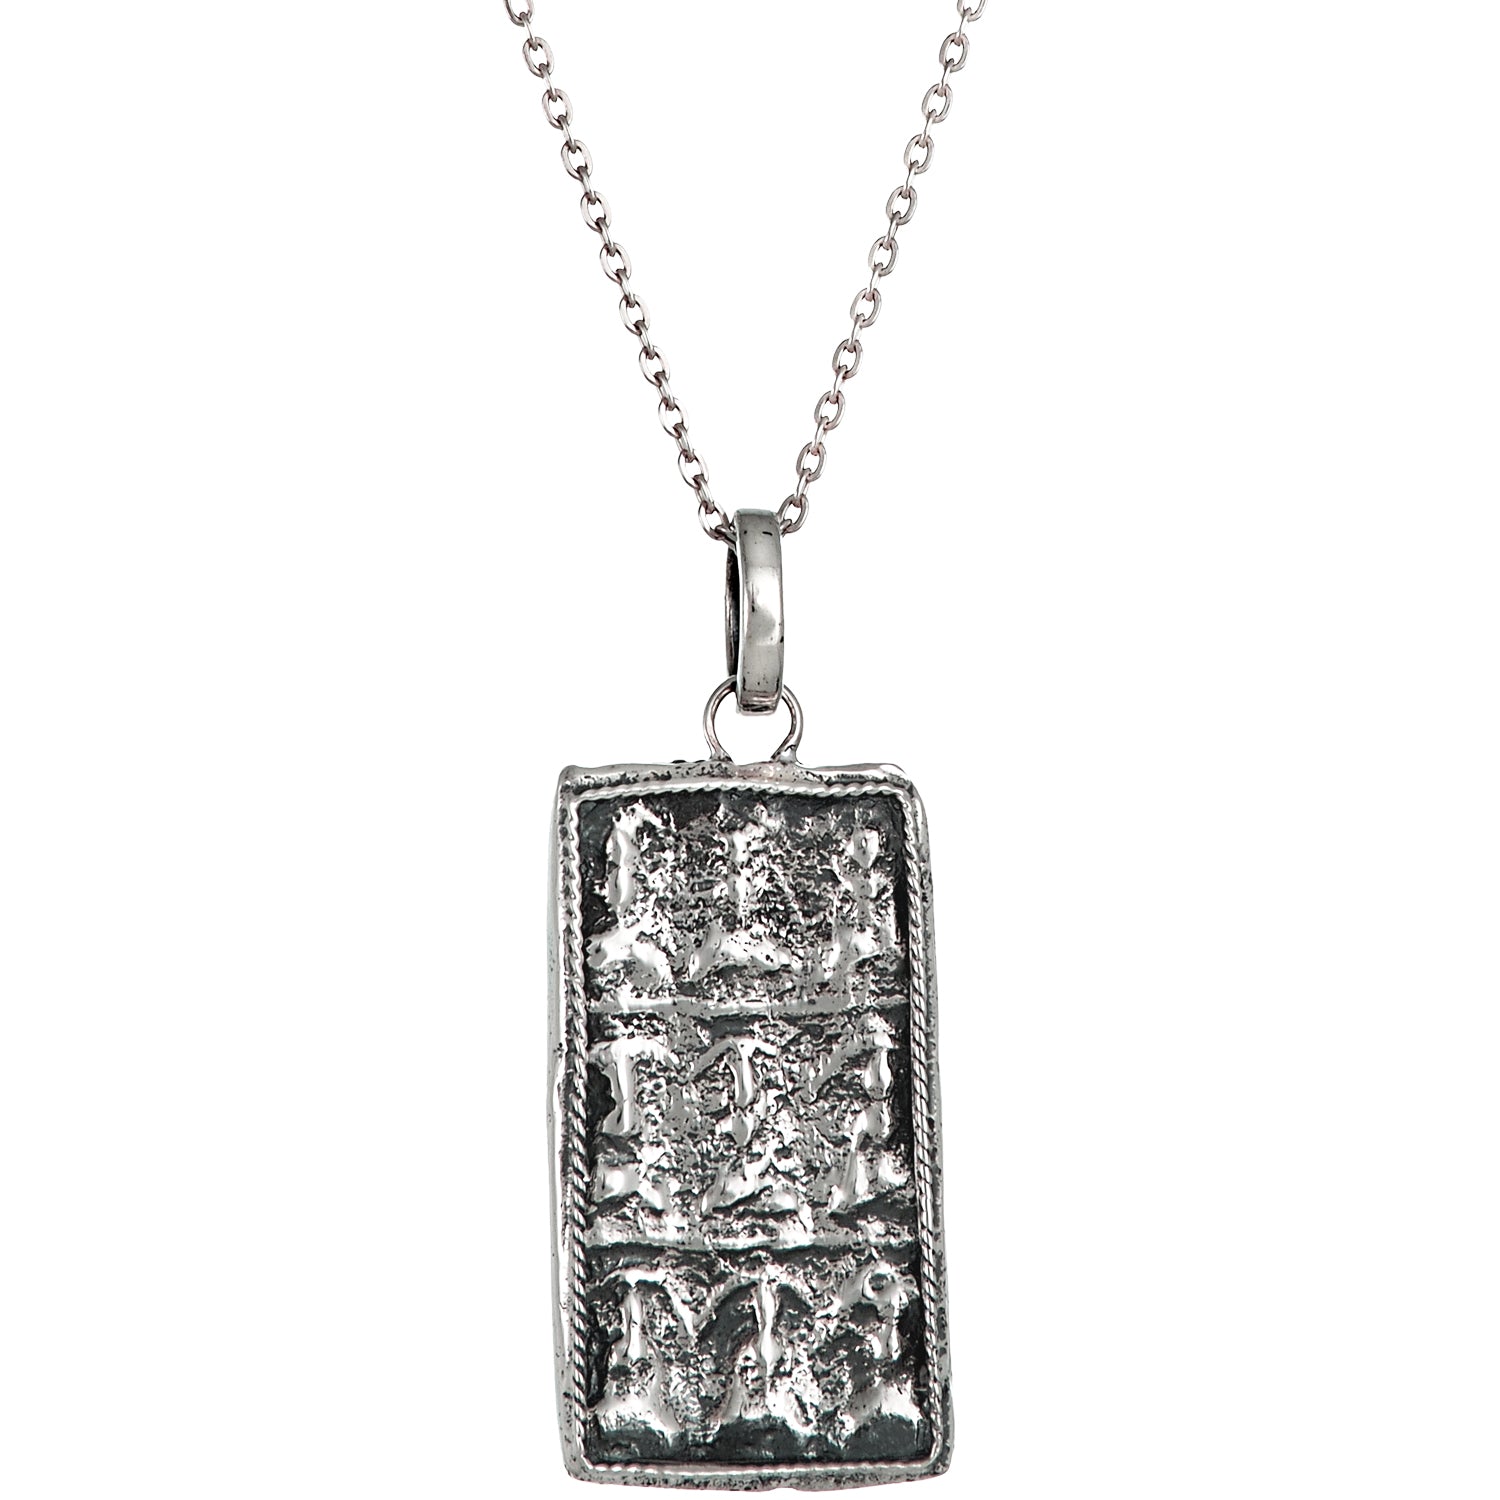 Buddha Ornament Anhänger in Sterling Silber mit geschwärzten Partien von ETERNAL BLISS - Spiritueller Schmuck